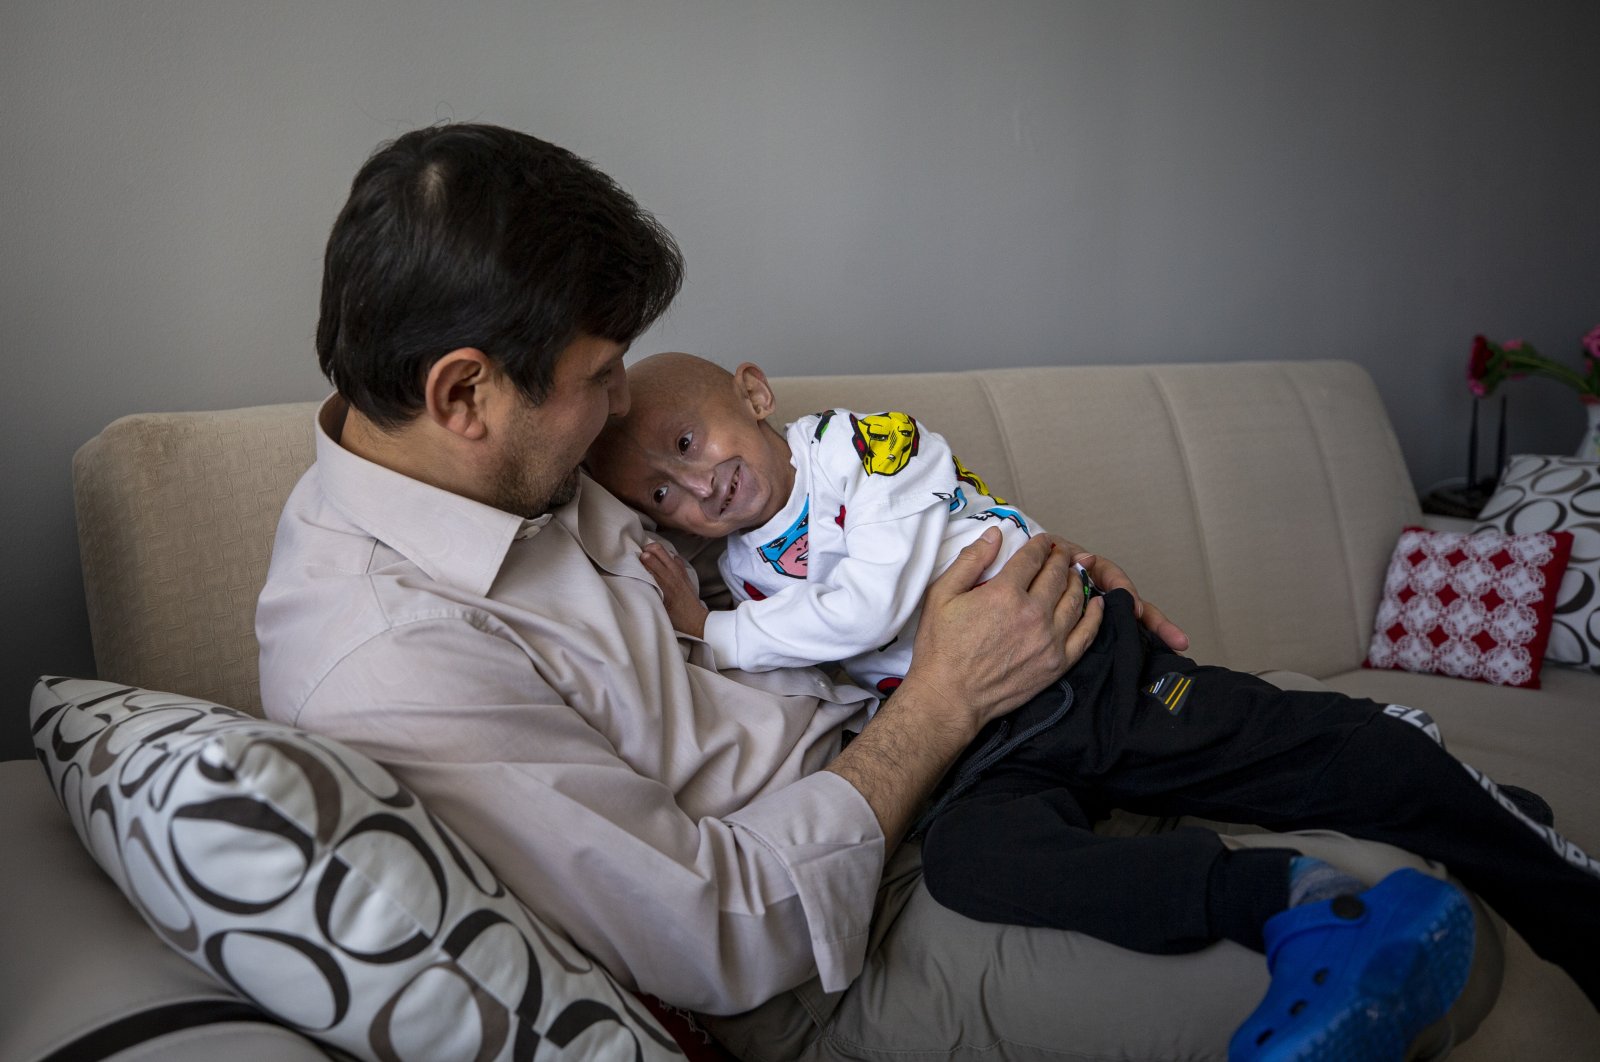 Veysel Çözvelioğlu embraces his father Mustafa Çözvelioğlu in their home, in the capital Ankara, Turkey, Jan. 31, 2022. (AA PHOTO)